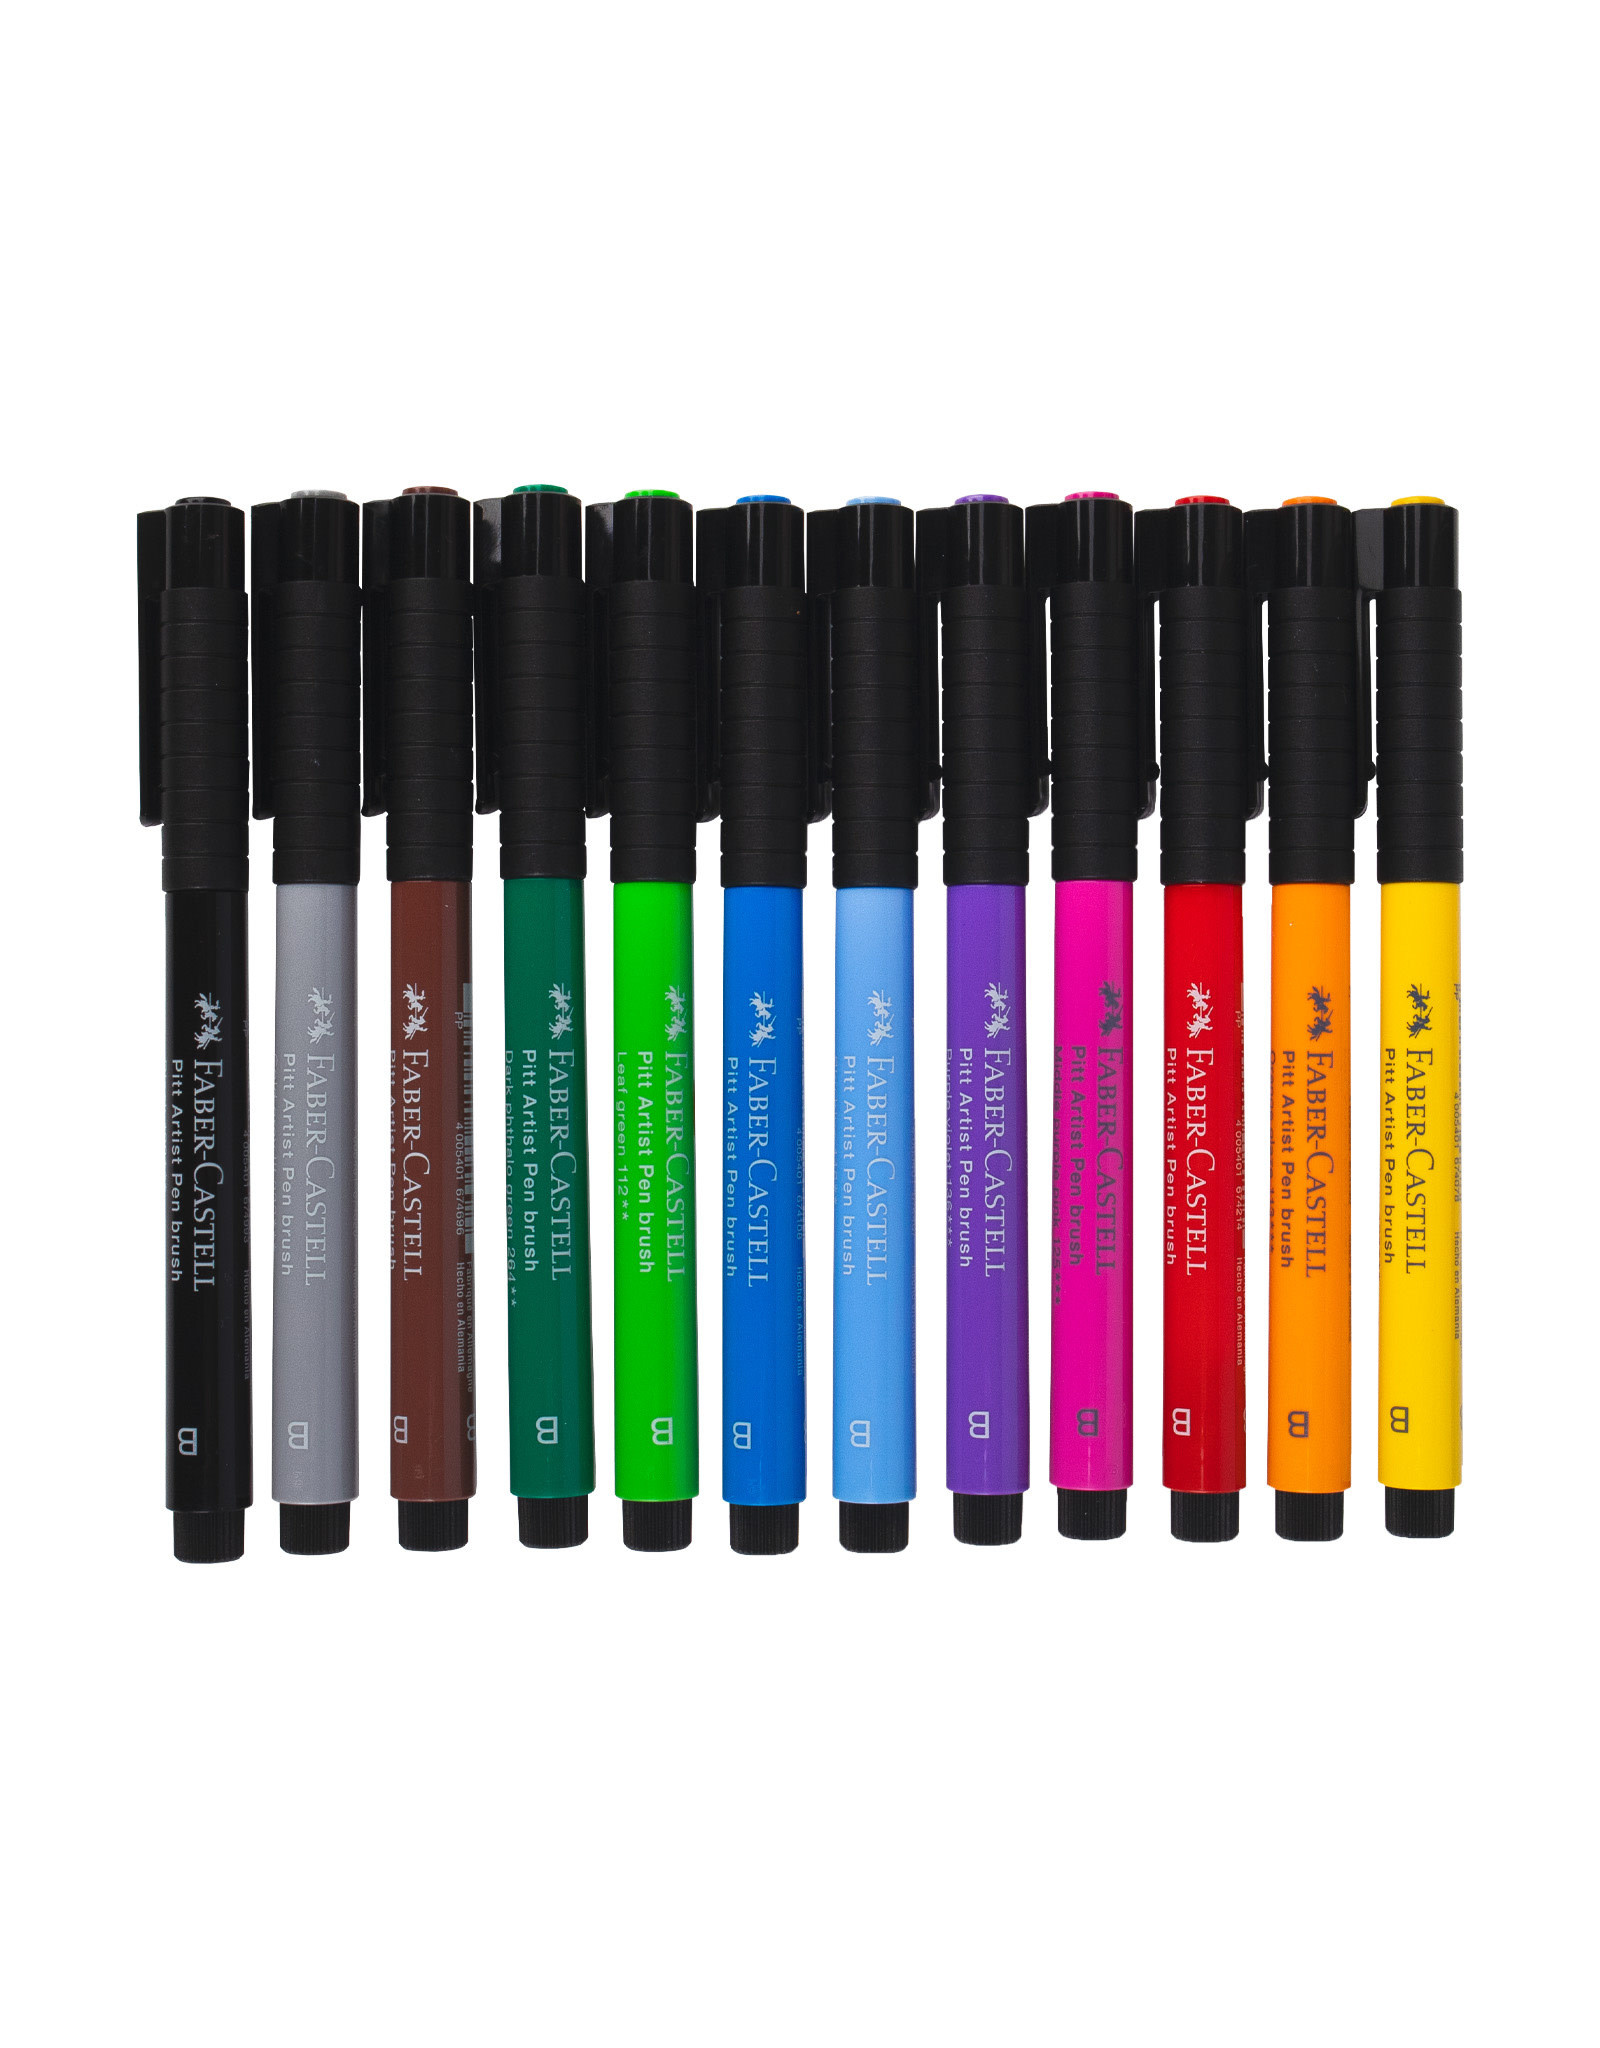 FABER-CASTELL Pitt Artist Pen Set of 12 Brush Tip Pens